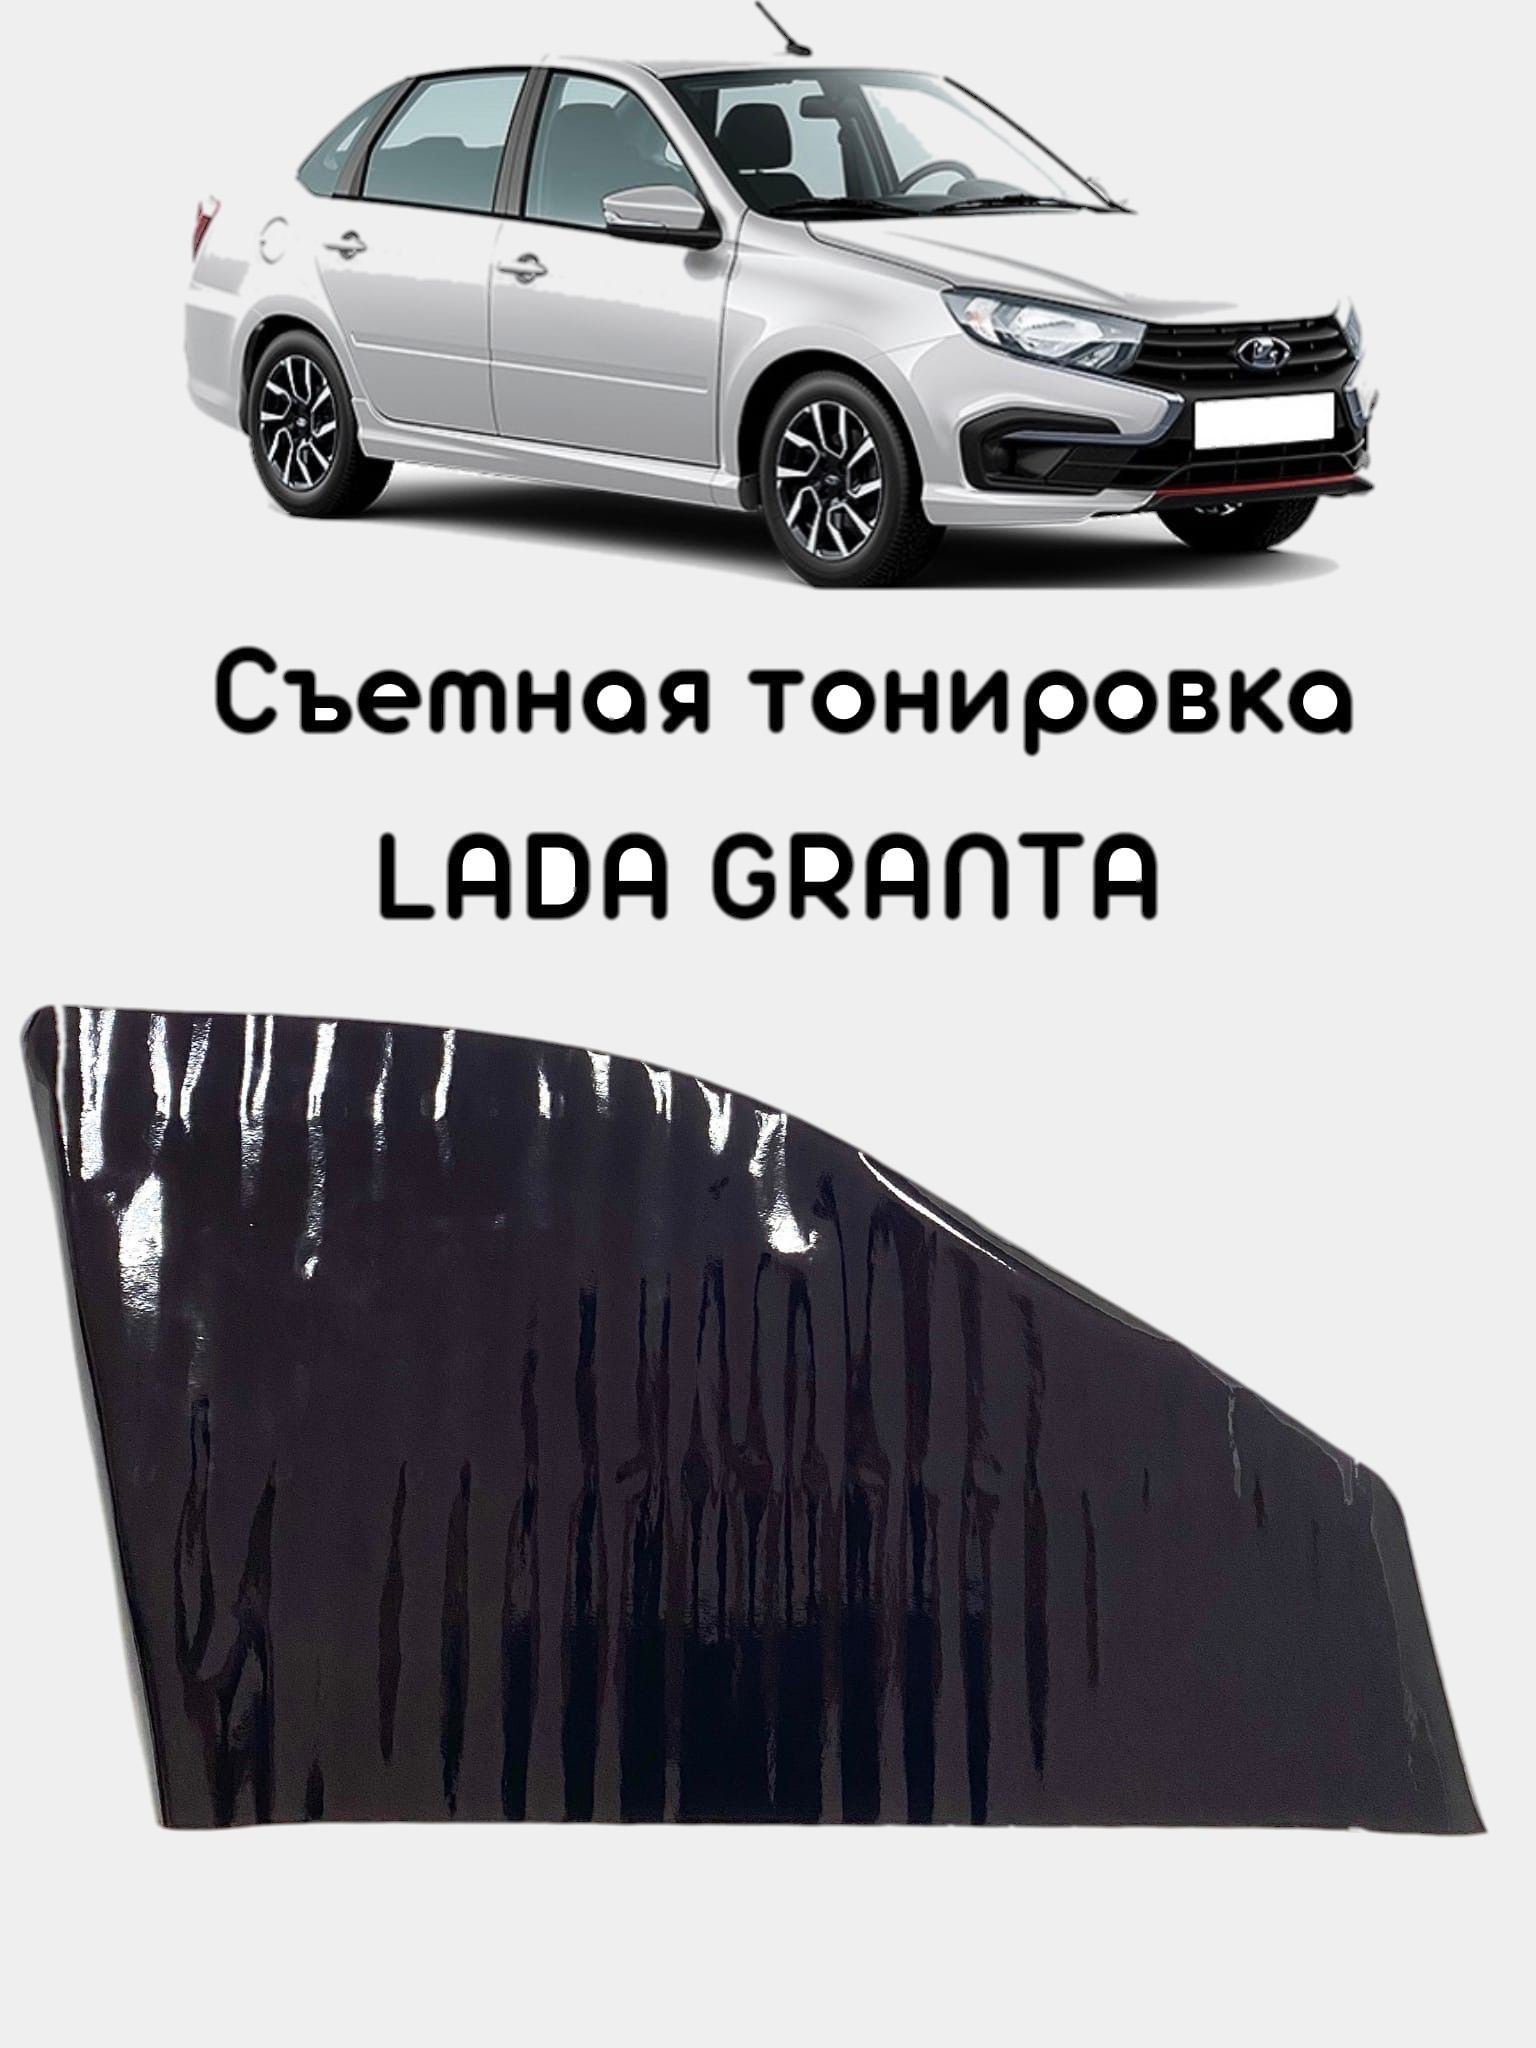 Тонировка автомобиля Lada